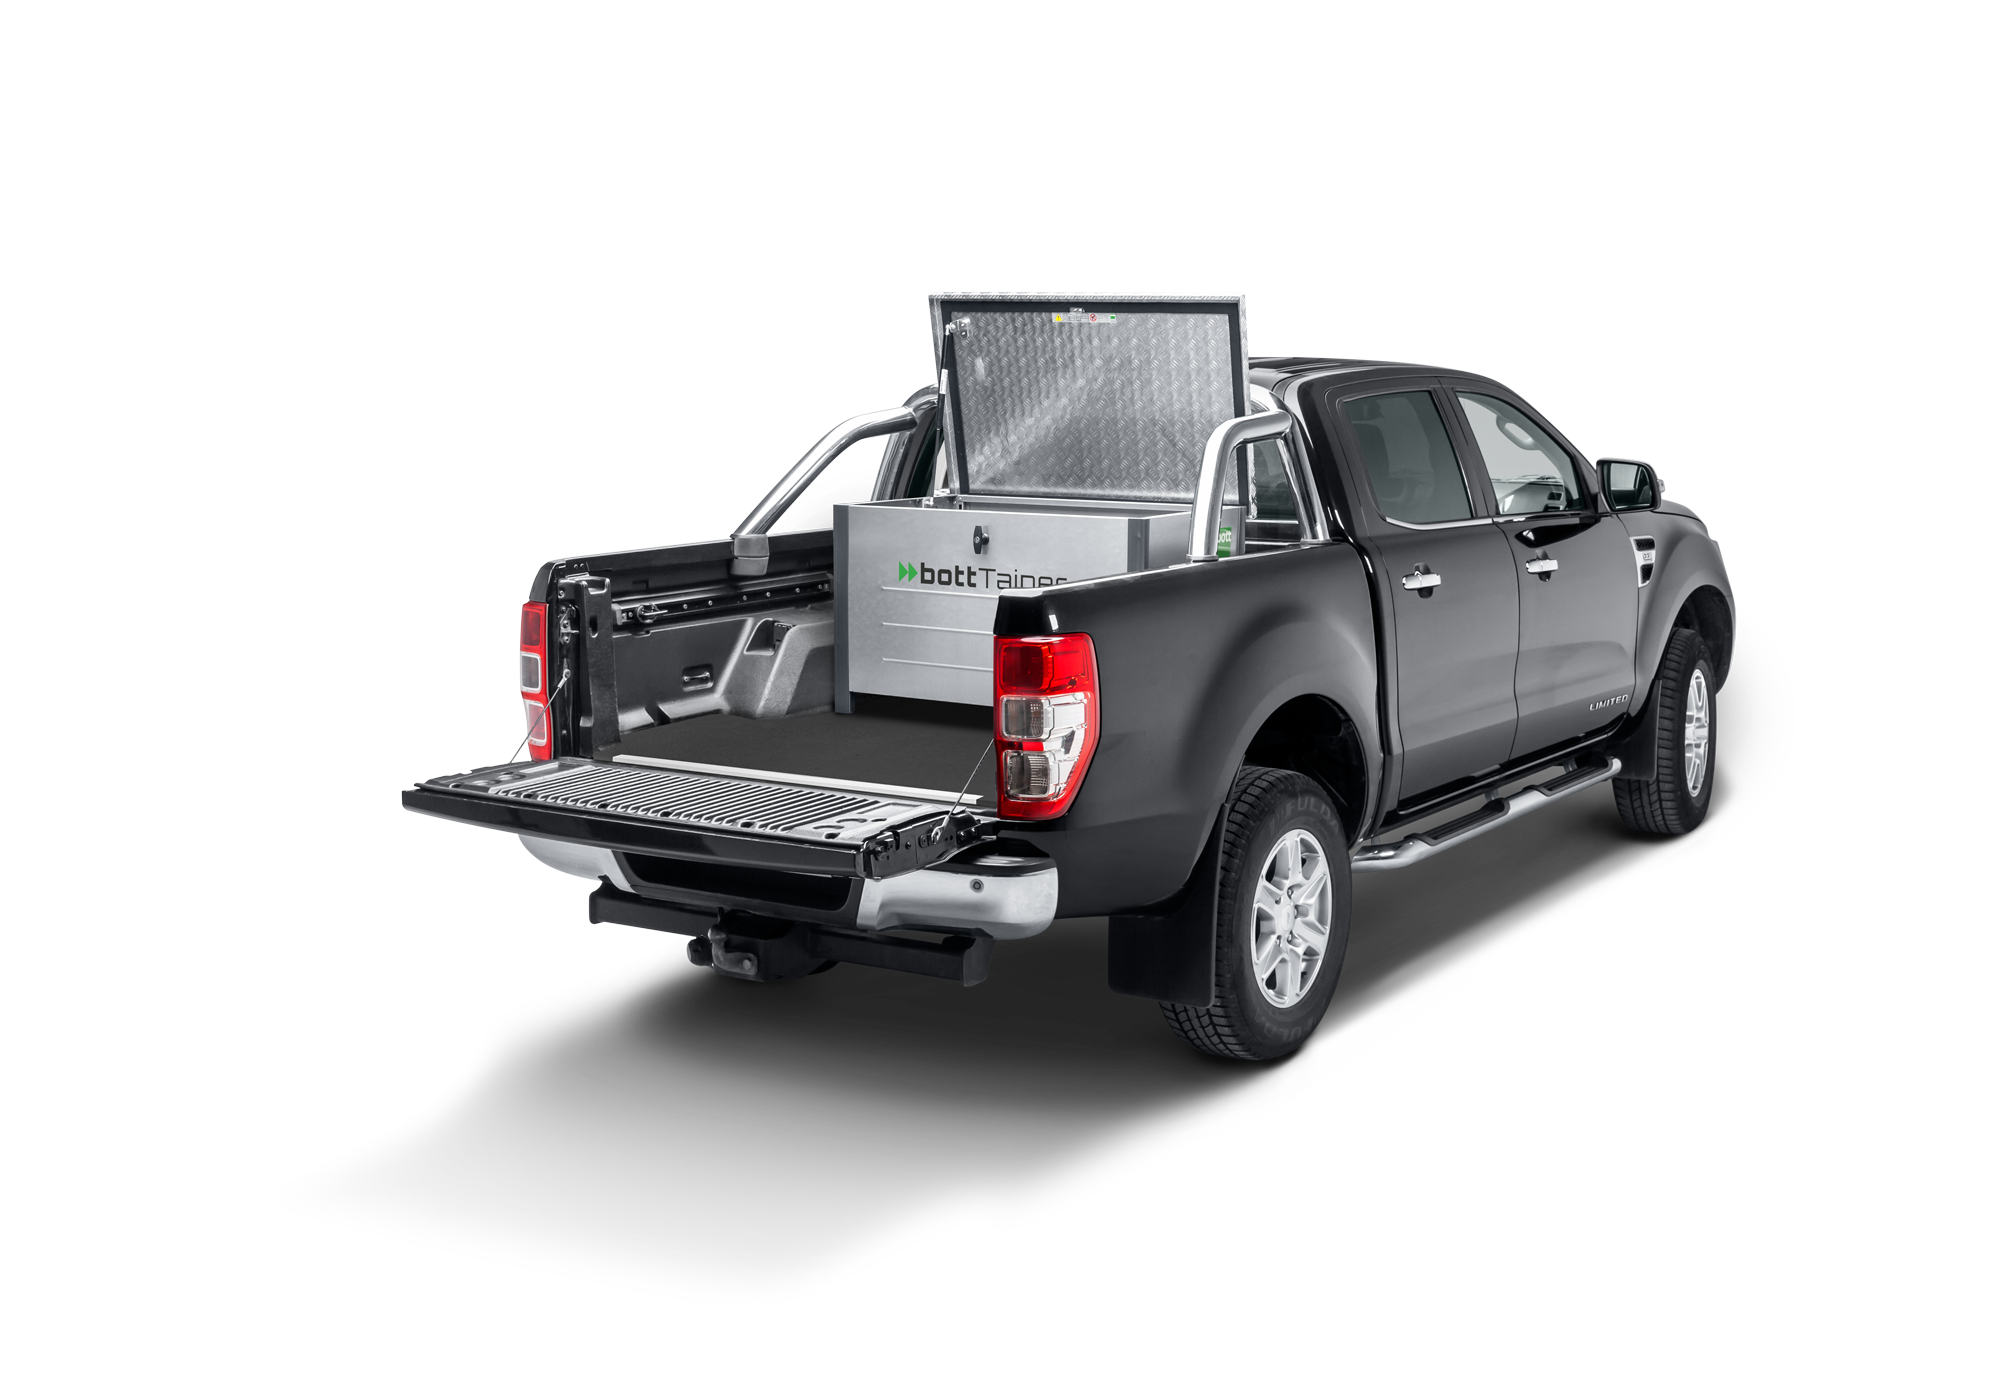 Bedrijfswageninrichting voor platformvoertuigen, voorbeeld van een container voor Ford Ranger